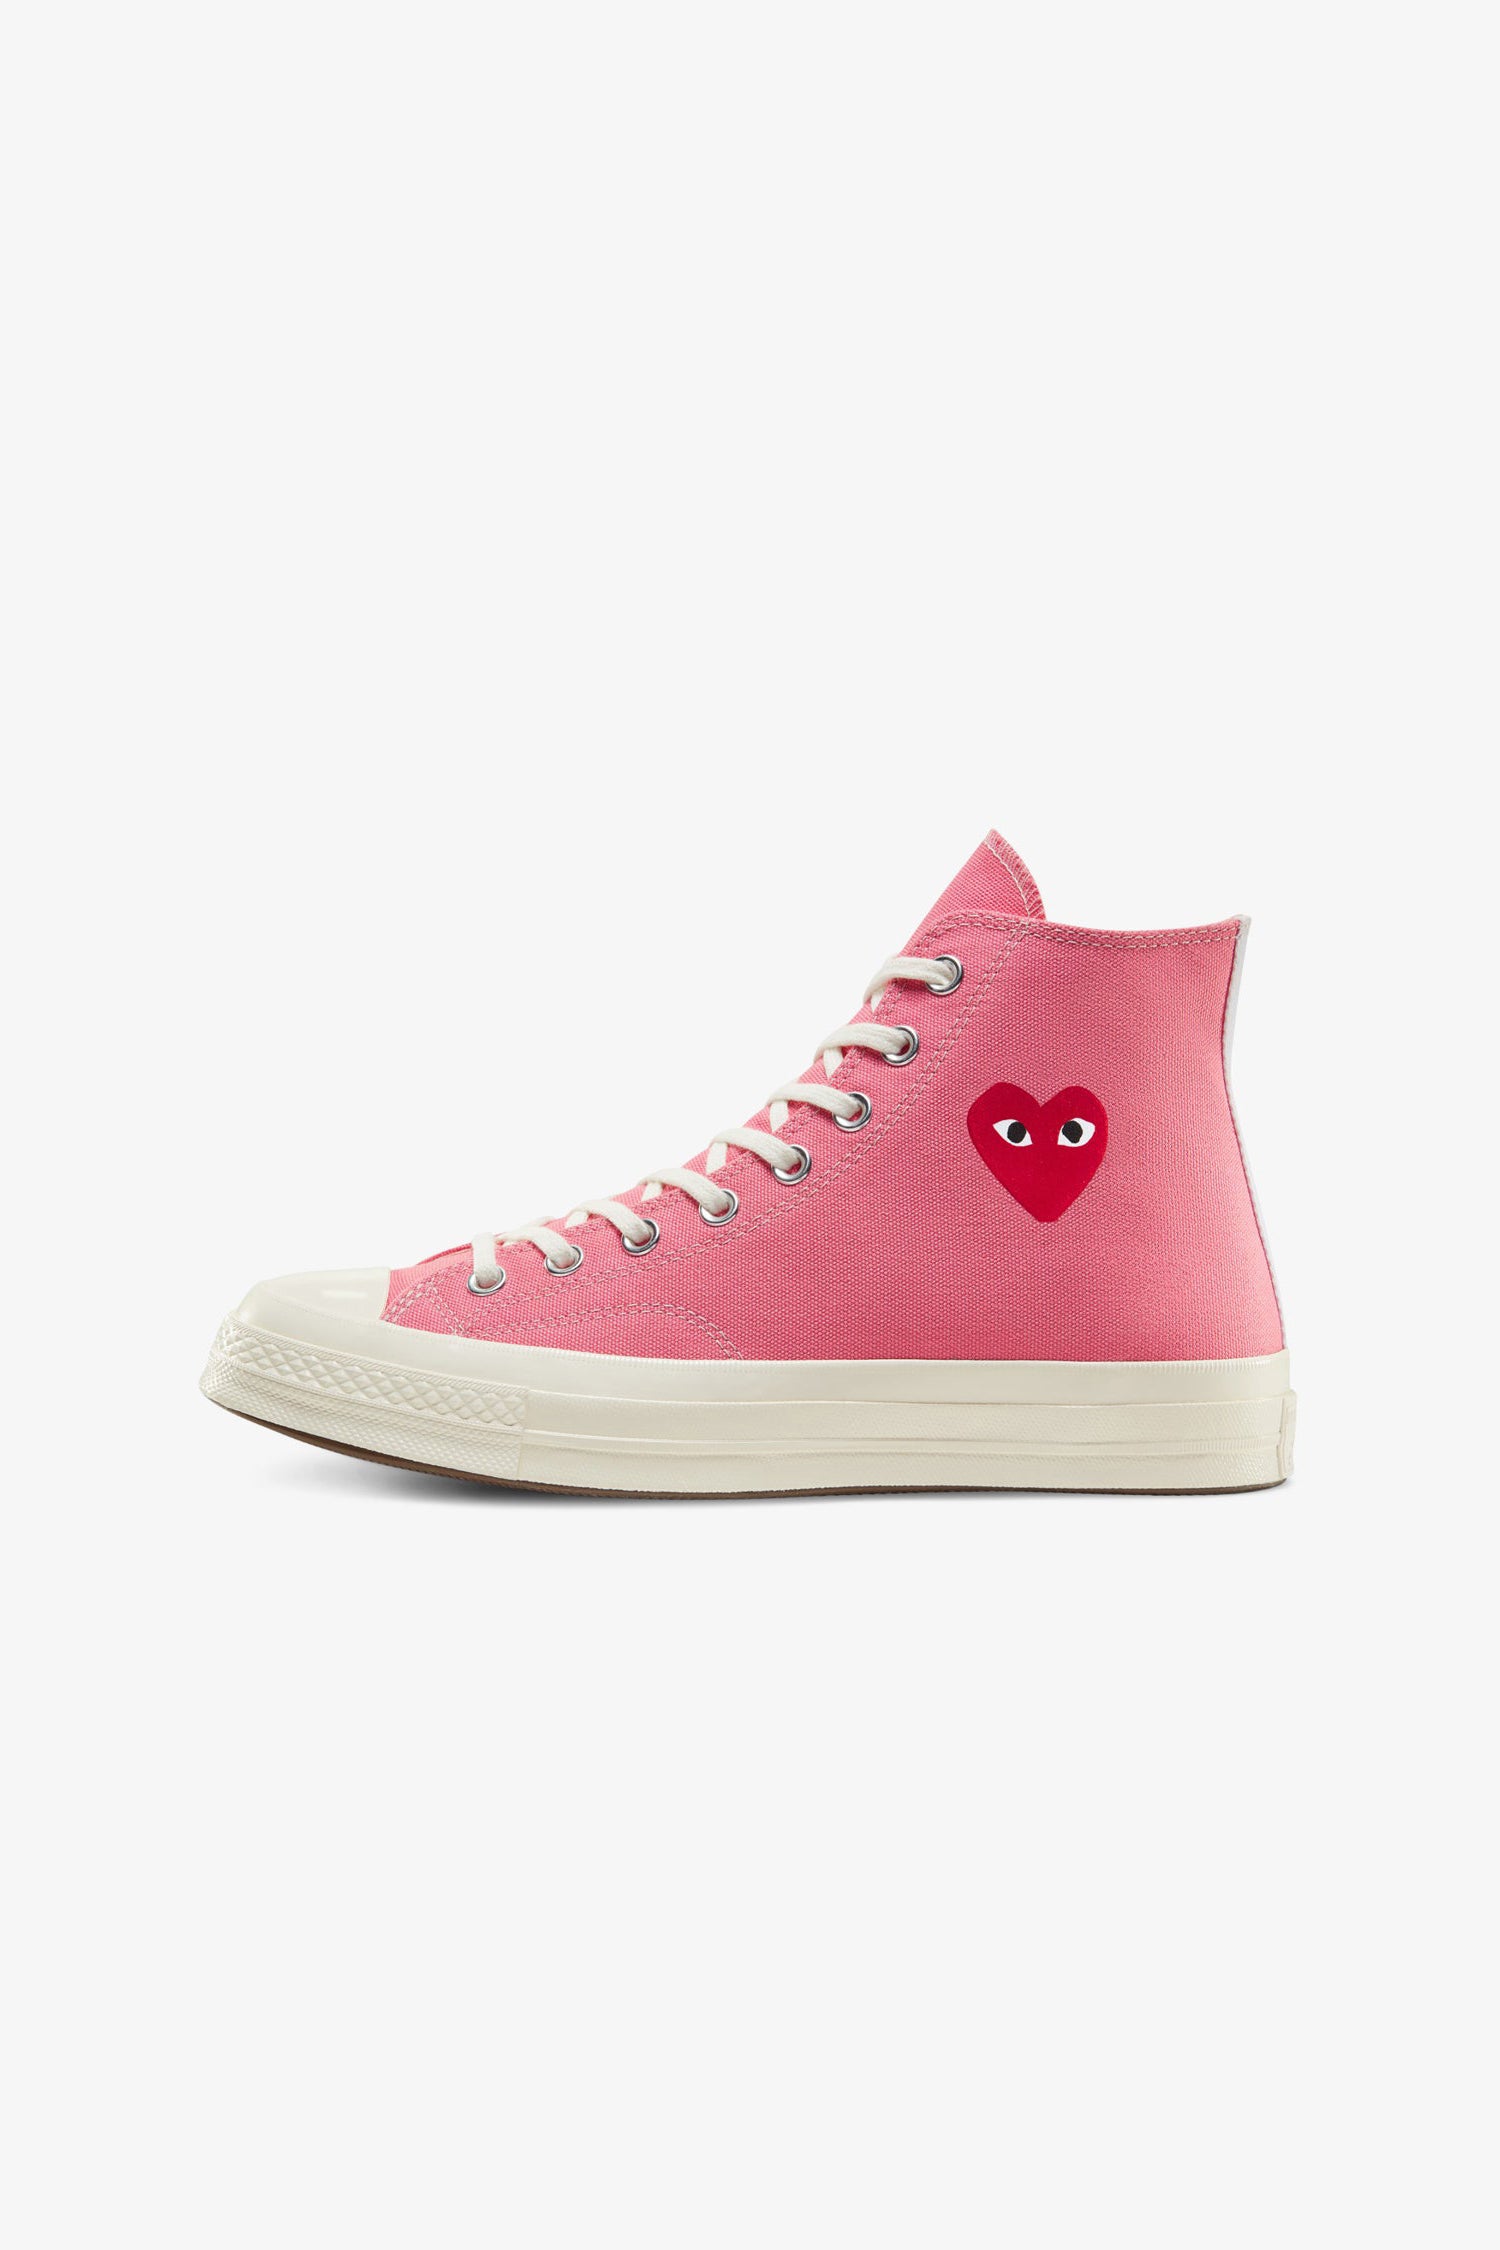 Selectshop FRAME - COMME DES GARCONS PLAY Comme des Garçons x Converse Chuck '70 High (Bright Pink) Footwear Dubai